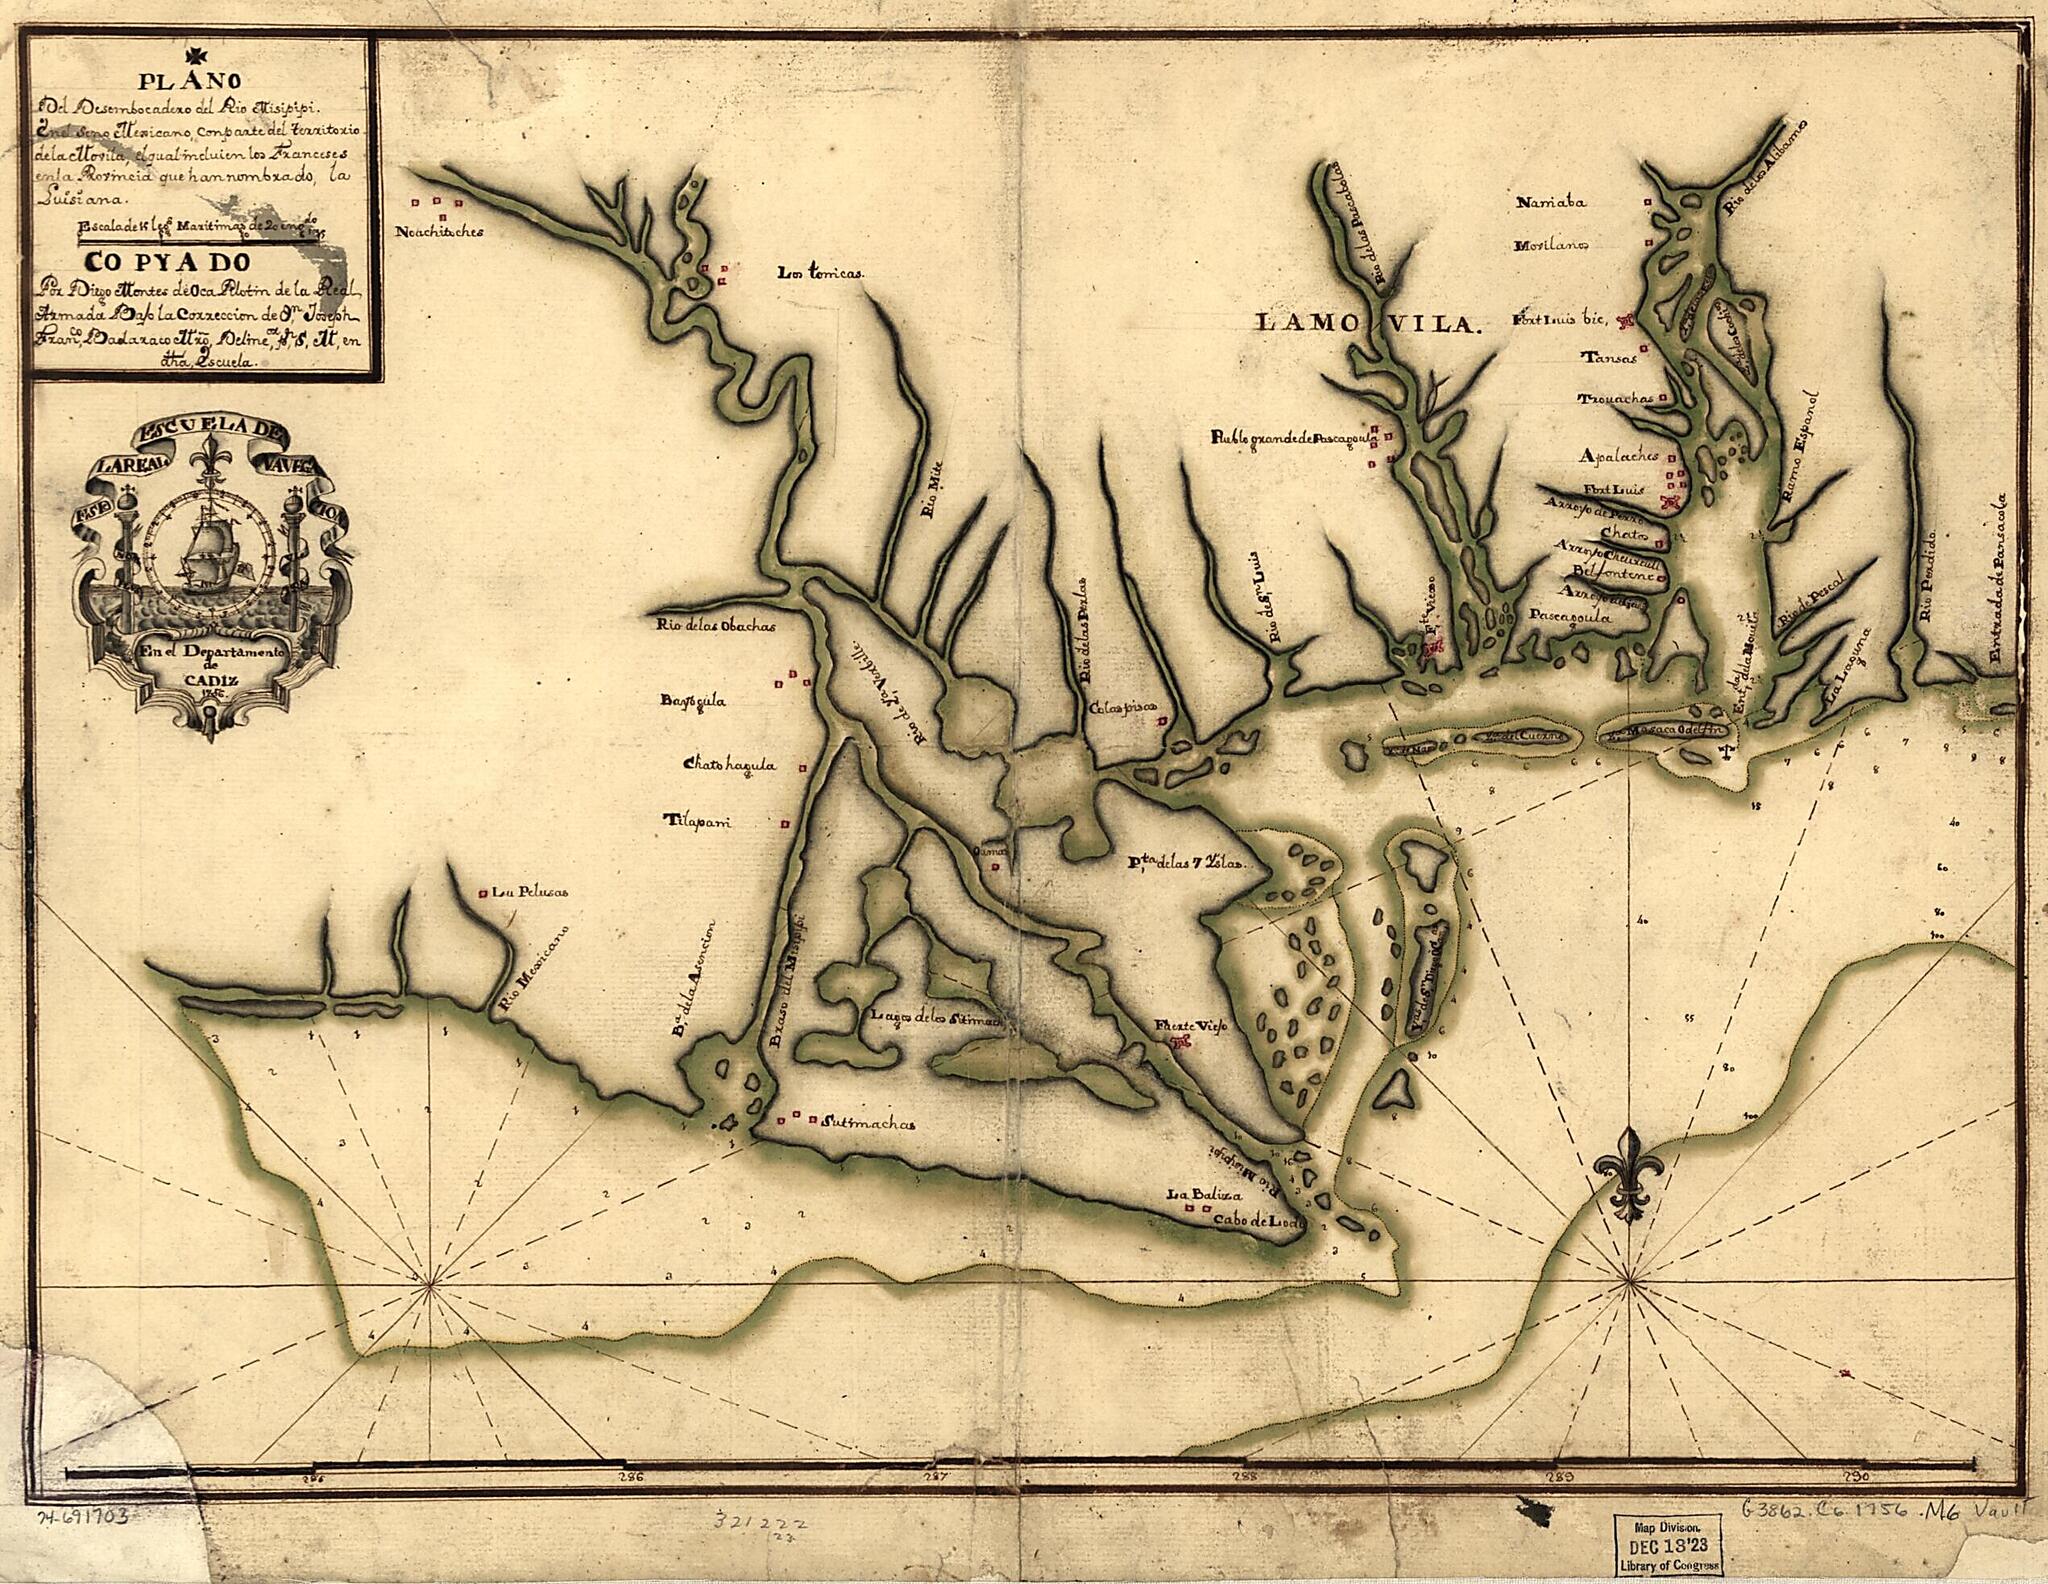 This old map of Plano Del Desembocadero Del Río Misipipi En El Seno Mexicano Con Parte Del Territorio De La Movila, El Qual Incluien Los Franceses En La Provincia Que Han Nombrado, La Luisiana from 1756 was created by Diego Montes De Oca in 1756